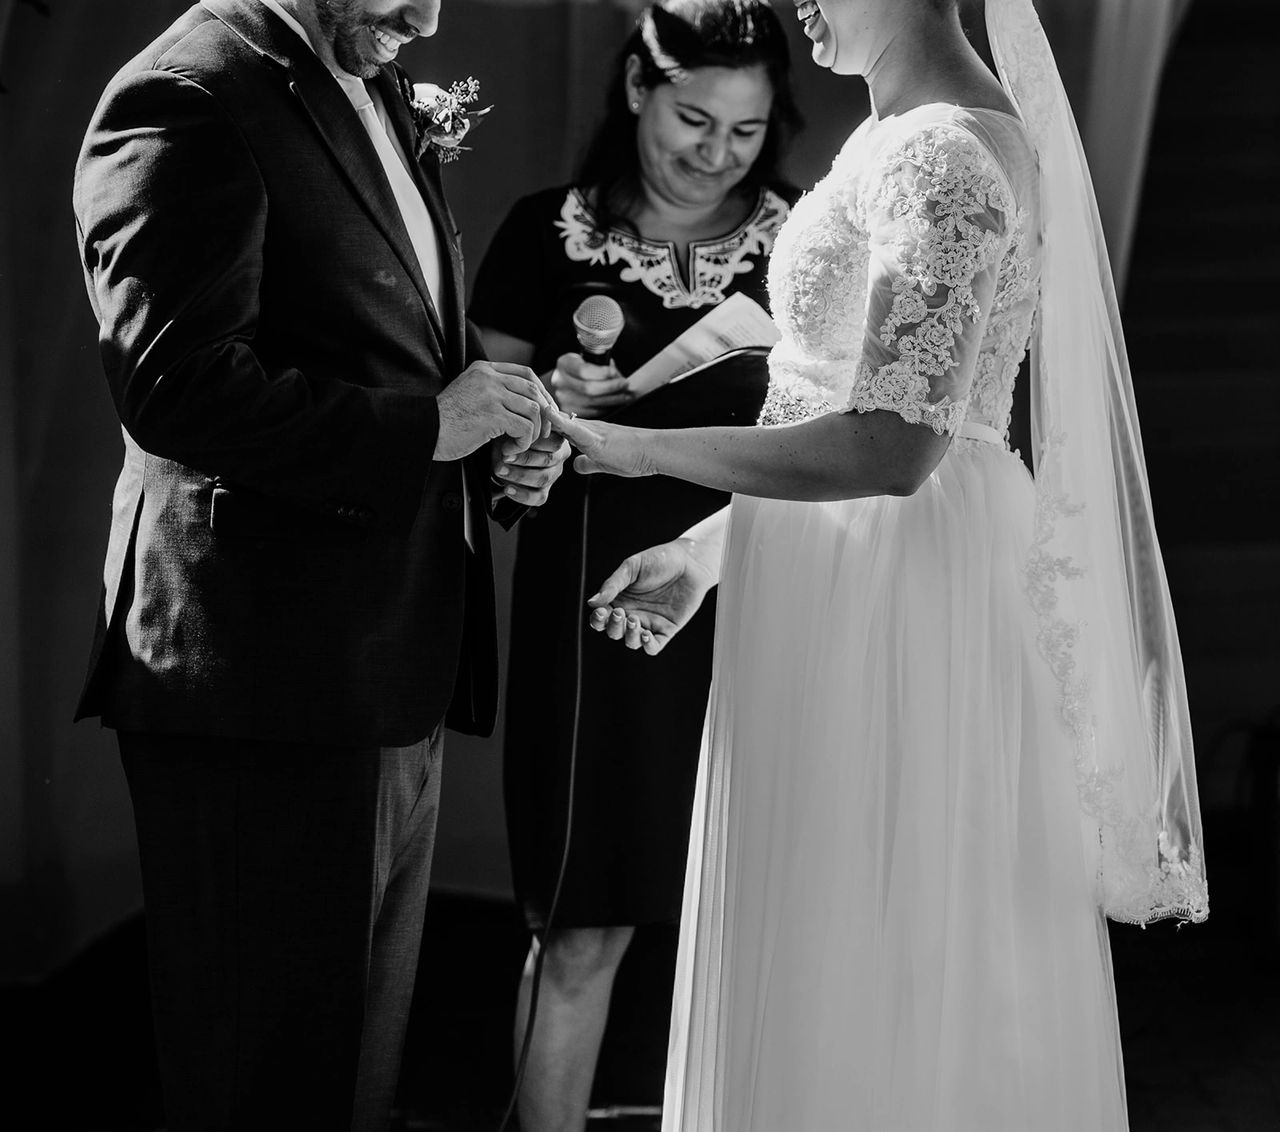 Groom sliding ring onto bride's hand